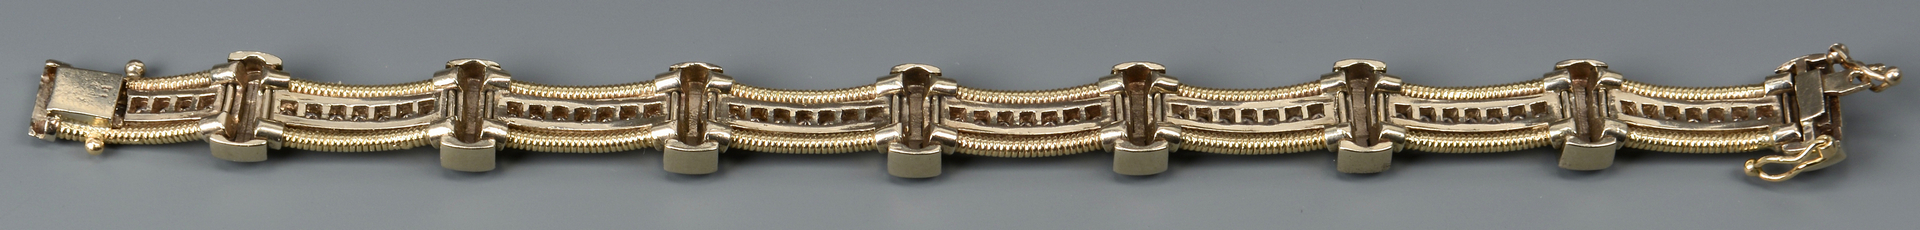 Lot 49: 14k Diamond Link Bracelet, 8" L